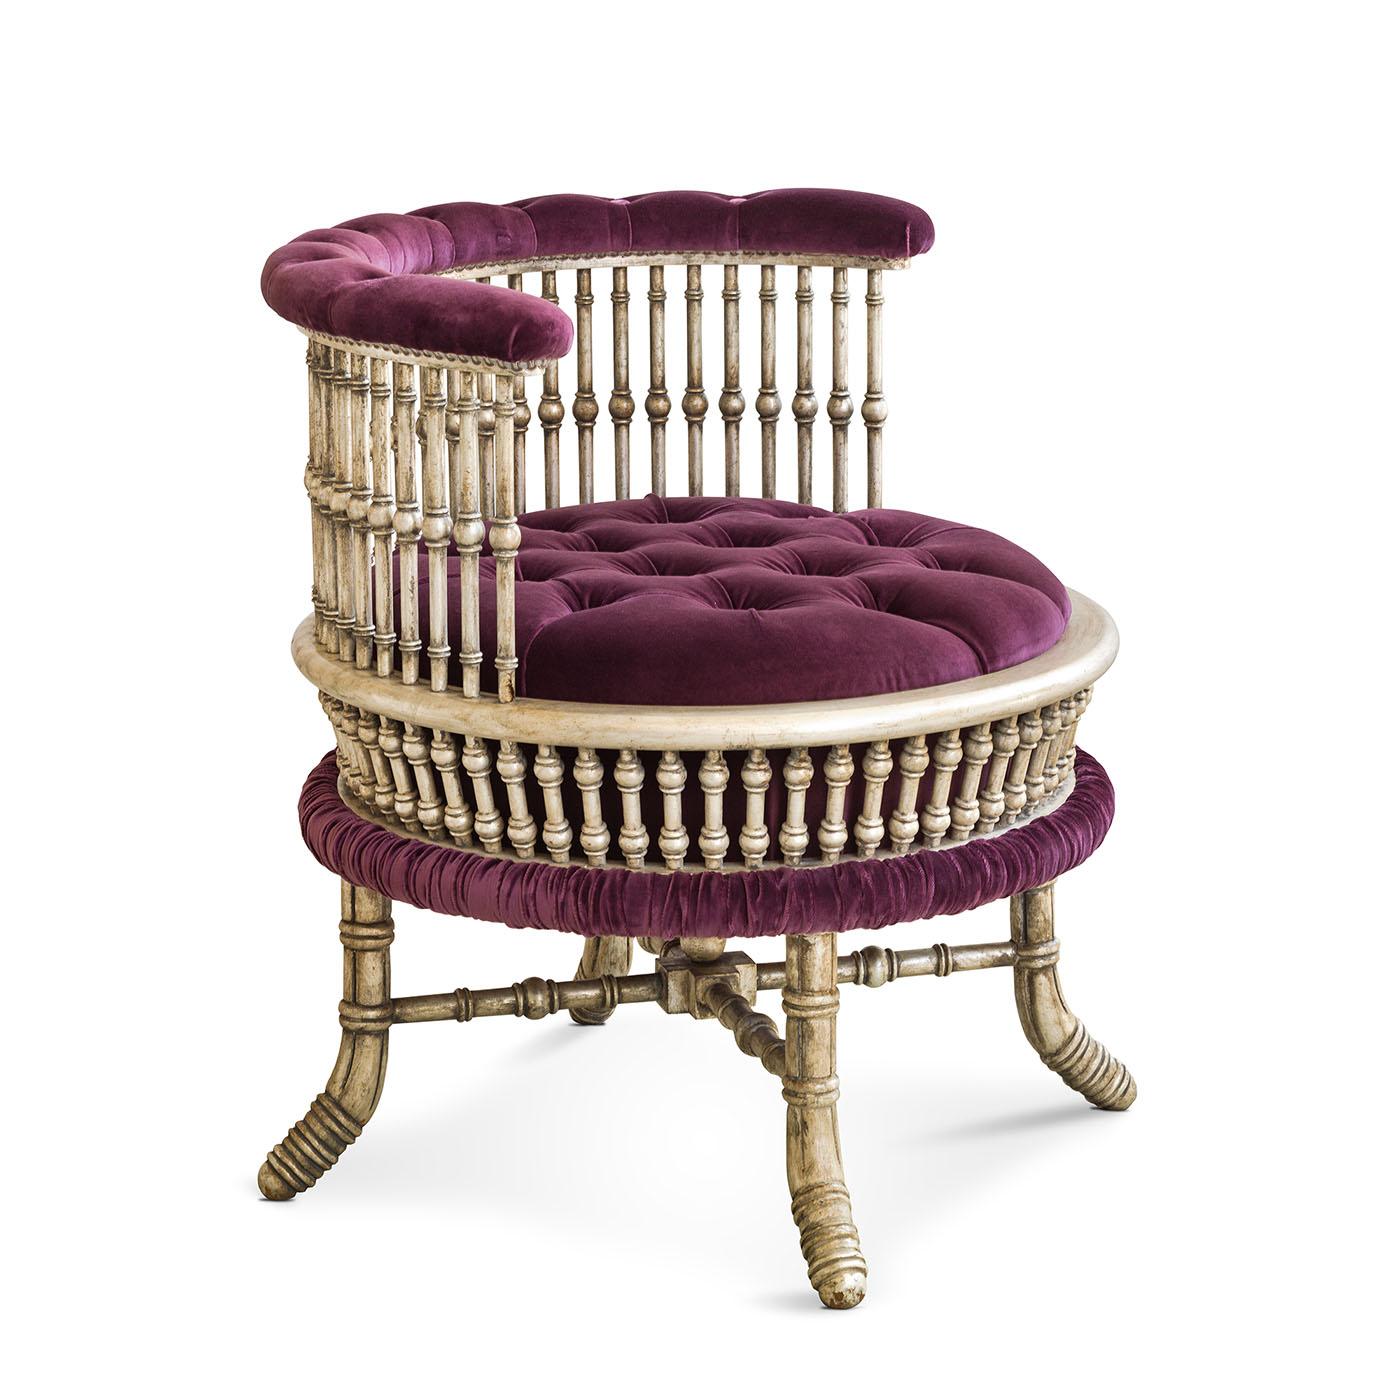 Die runde Form des Sessels Mahalia ist mit Baumwollsamt gepolstert und mit exquisiten Capitonnè-Details verziert. Dieser Sessel strahlt zeitlose Eleganz aus und verbindet höchsten Komfort mit einem fesselnden Design, das jeder Einrichtung einen